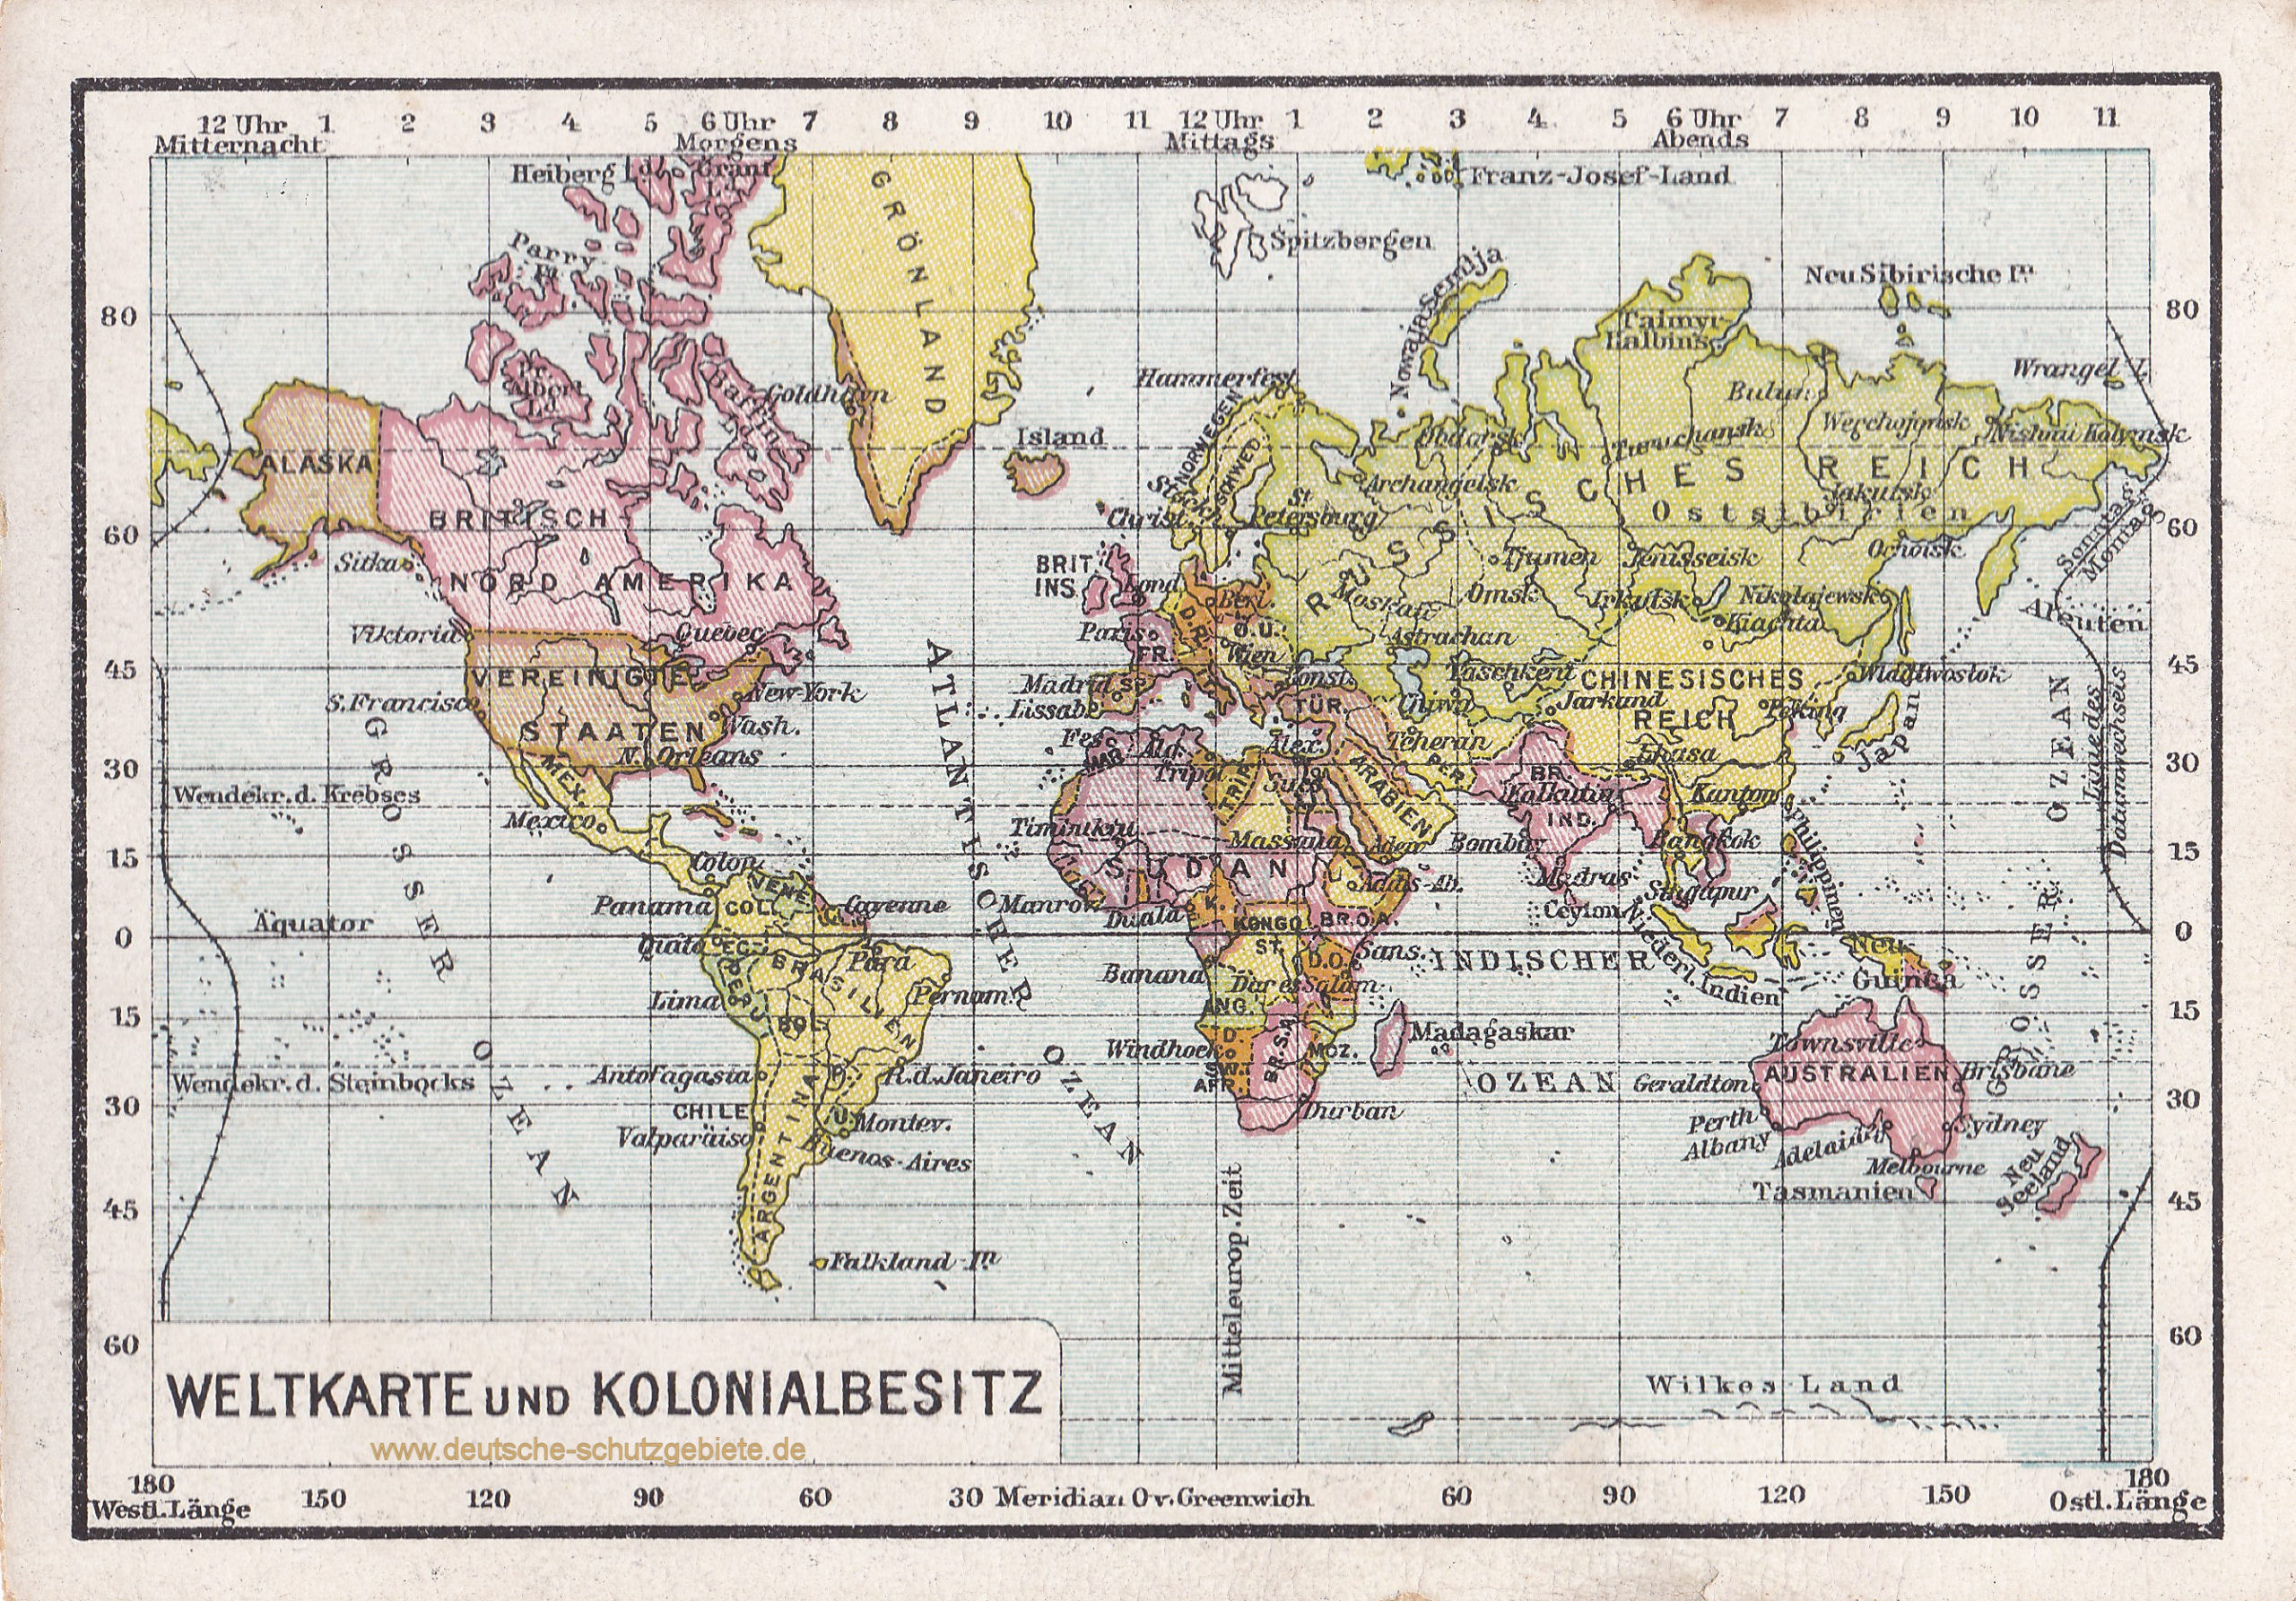 Weltkarte und Kolonialbesitz (1912)